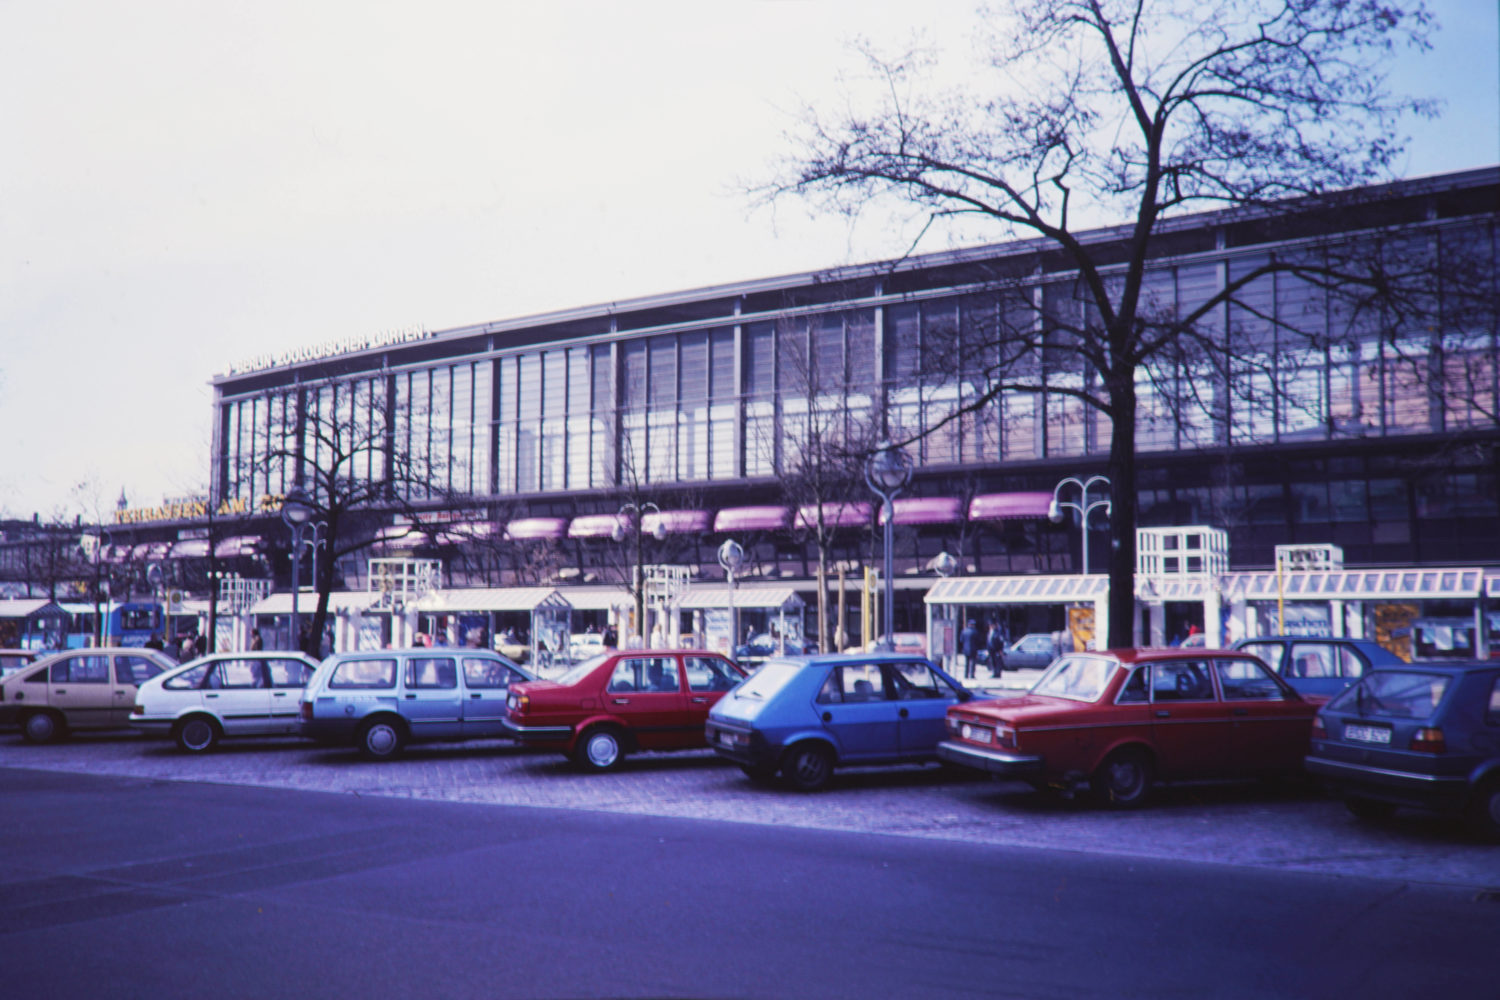 Bahnhof Zoo, 1970er-Jahre. Foto: Imago/Serienlicht